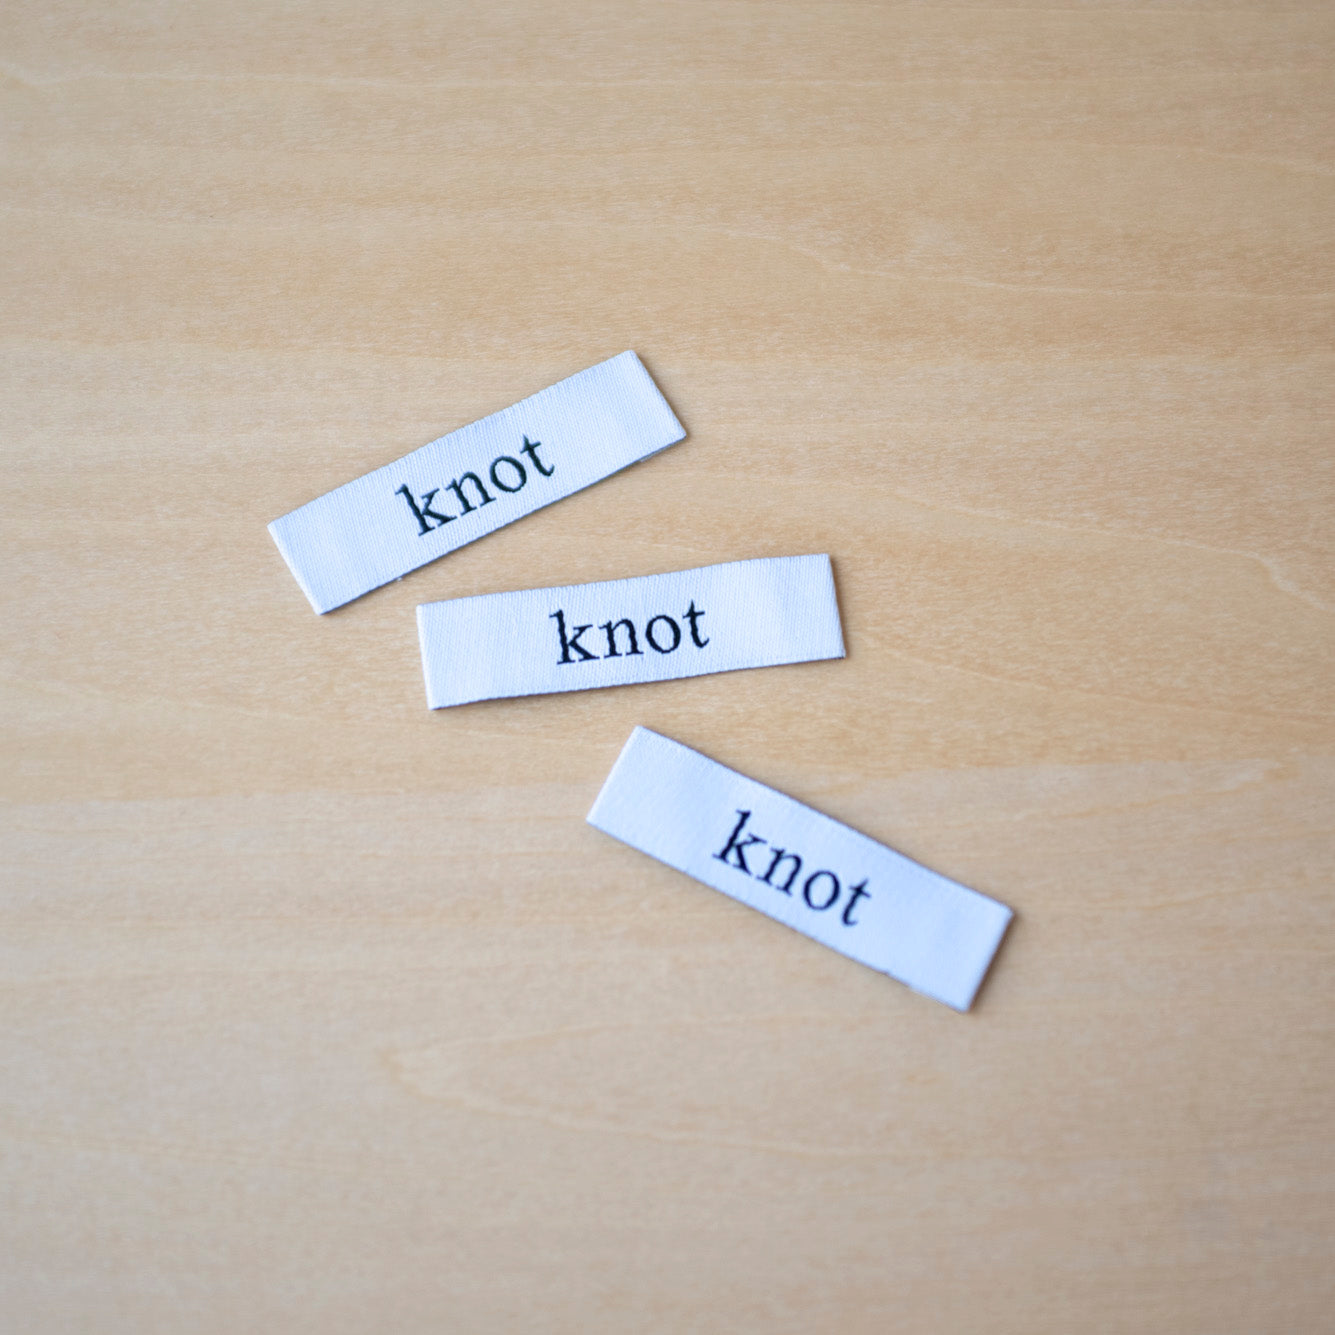 【織りネームラベル】- knot -